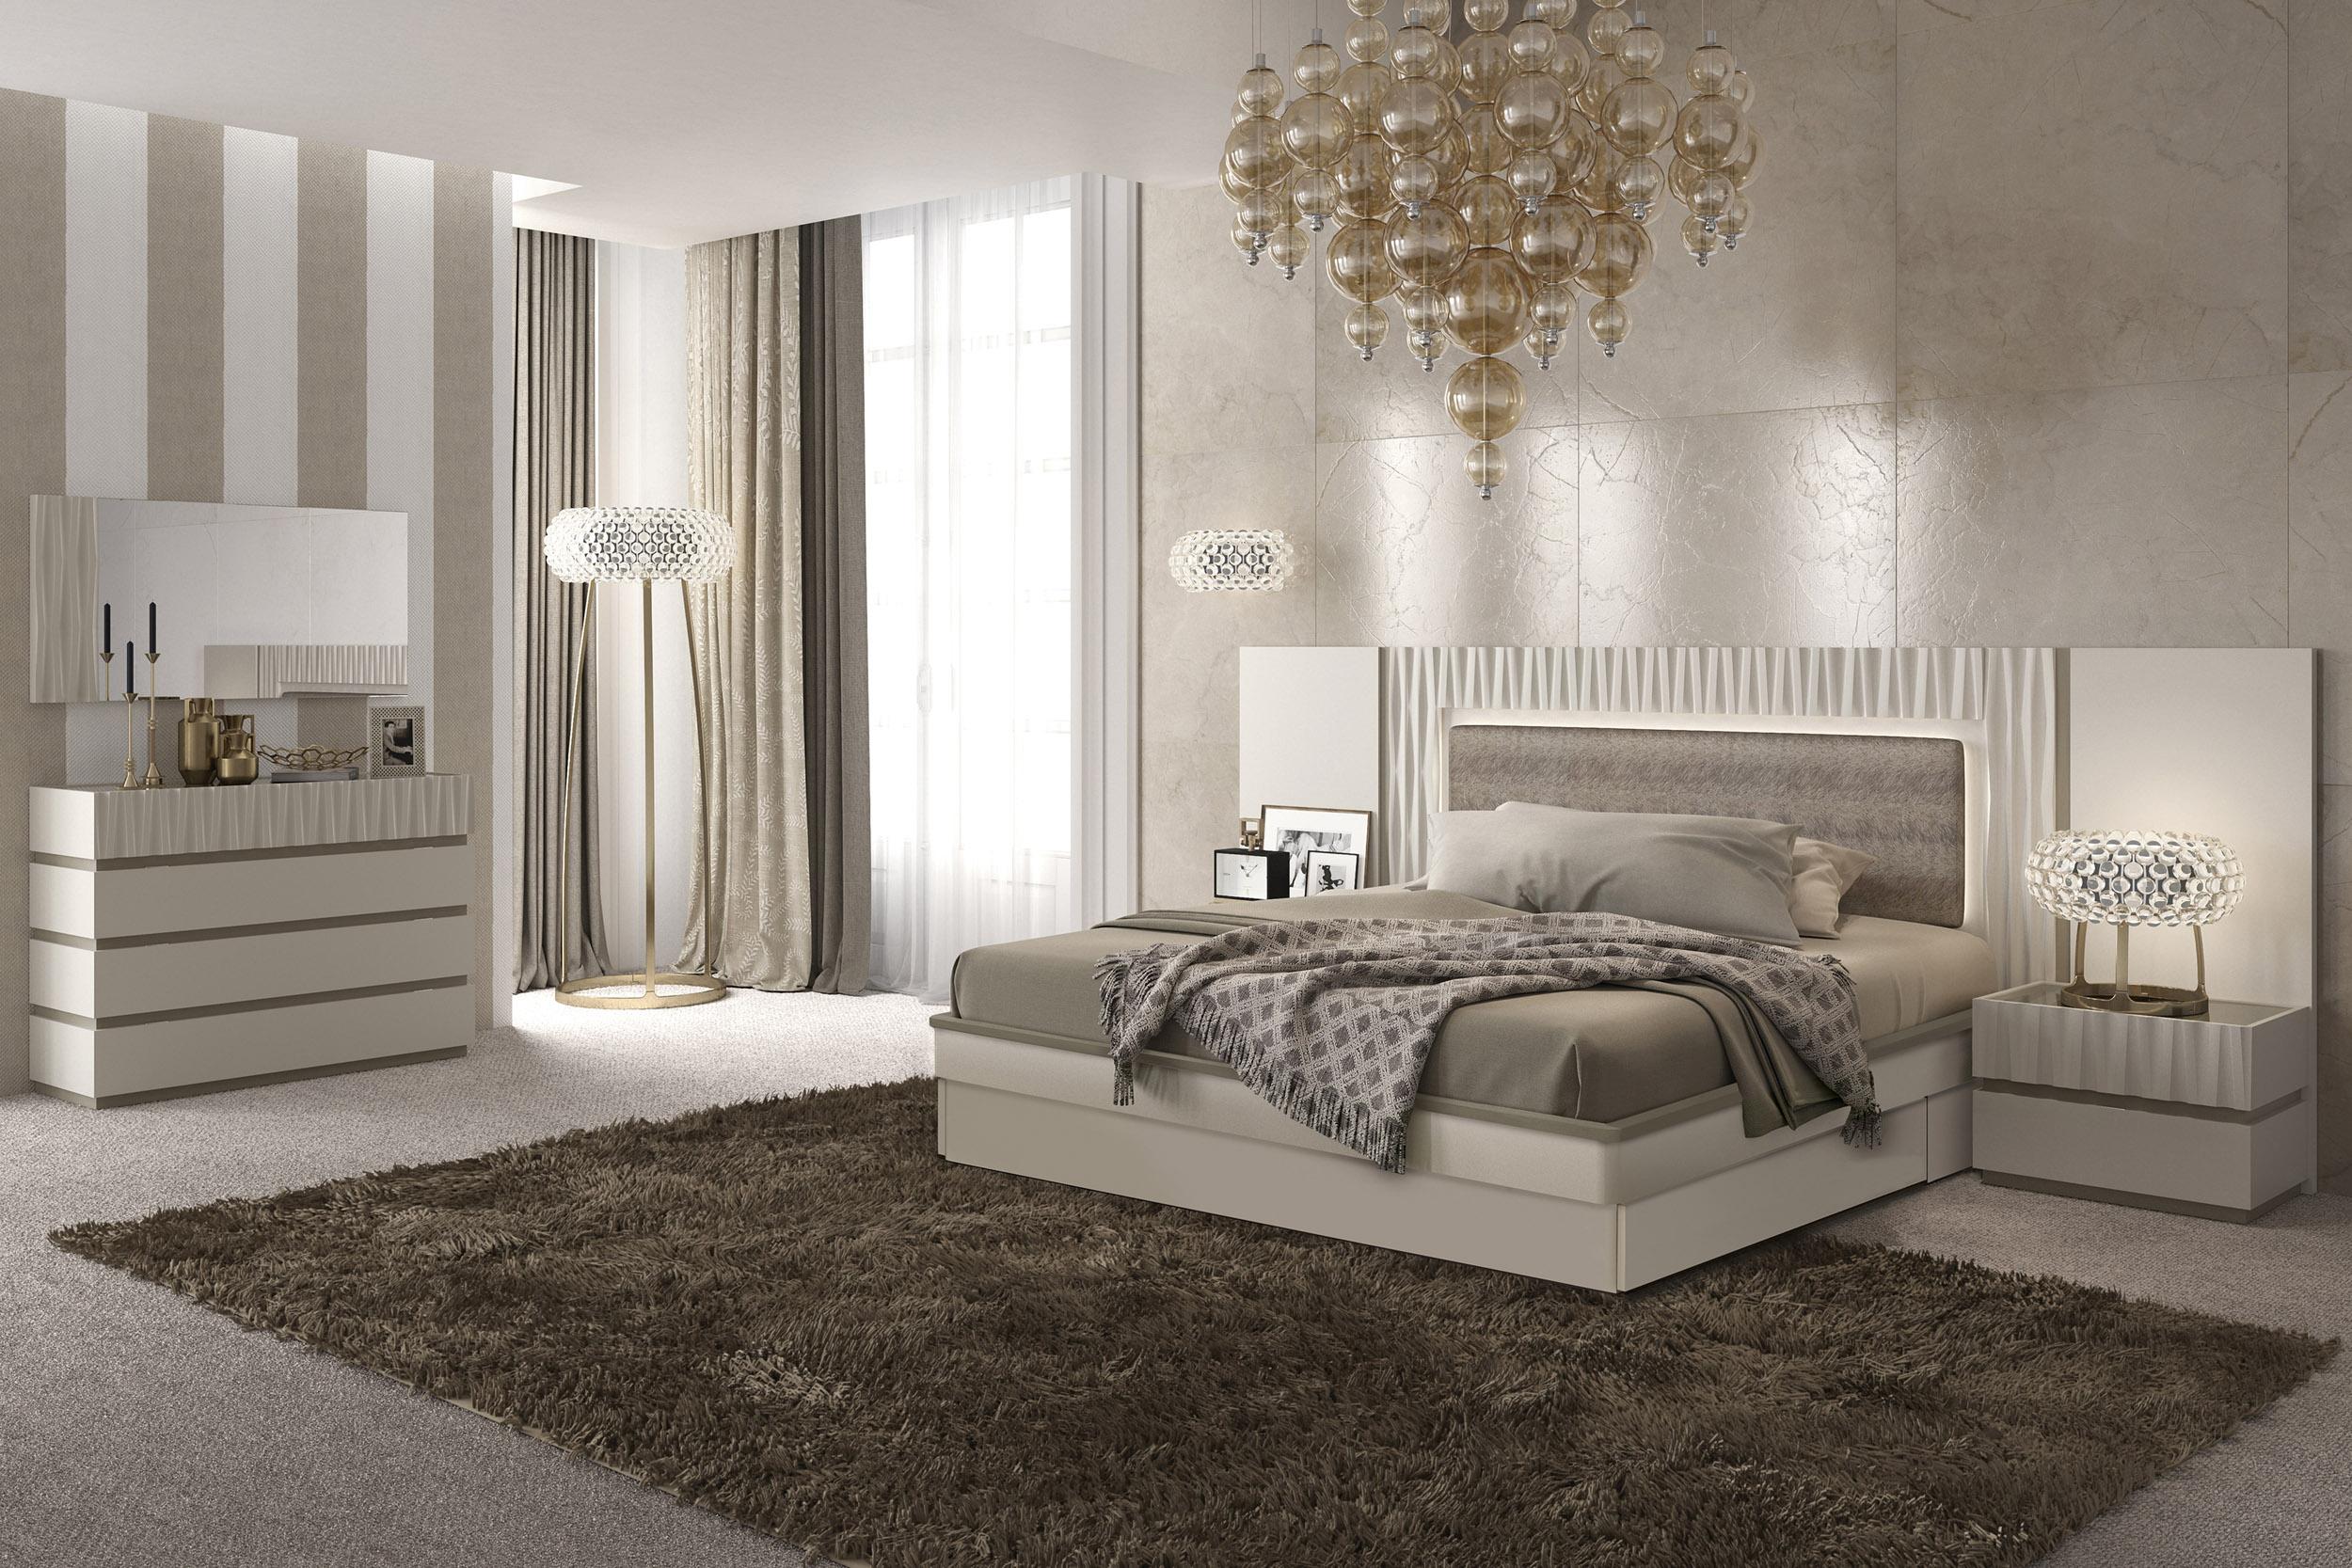 modern light bedroom furniture